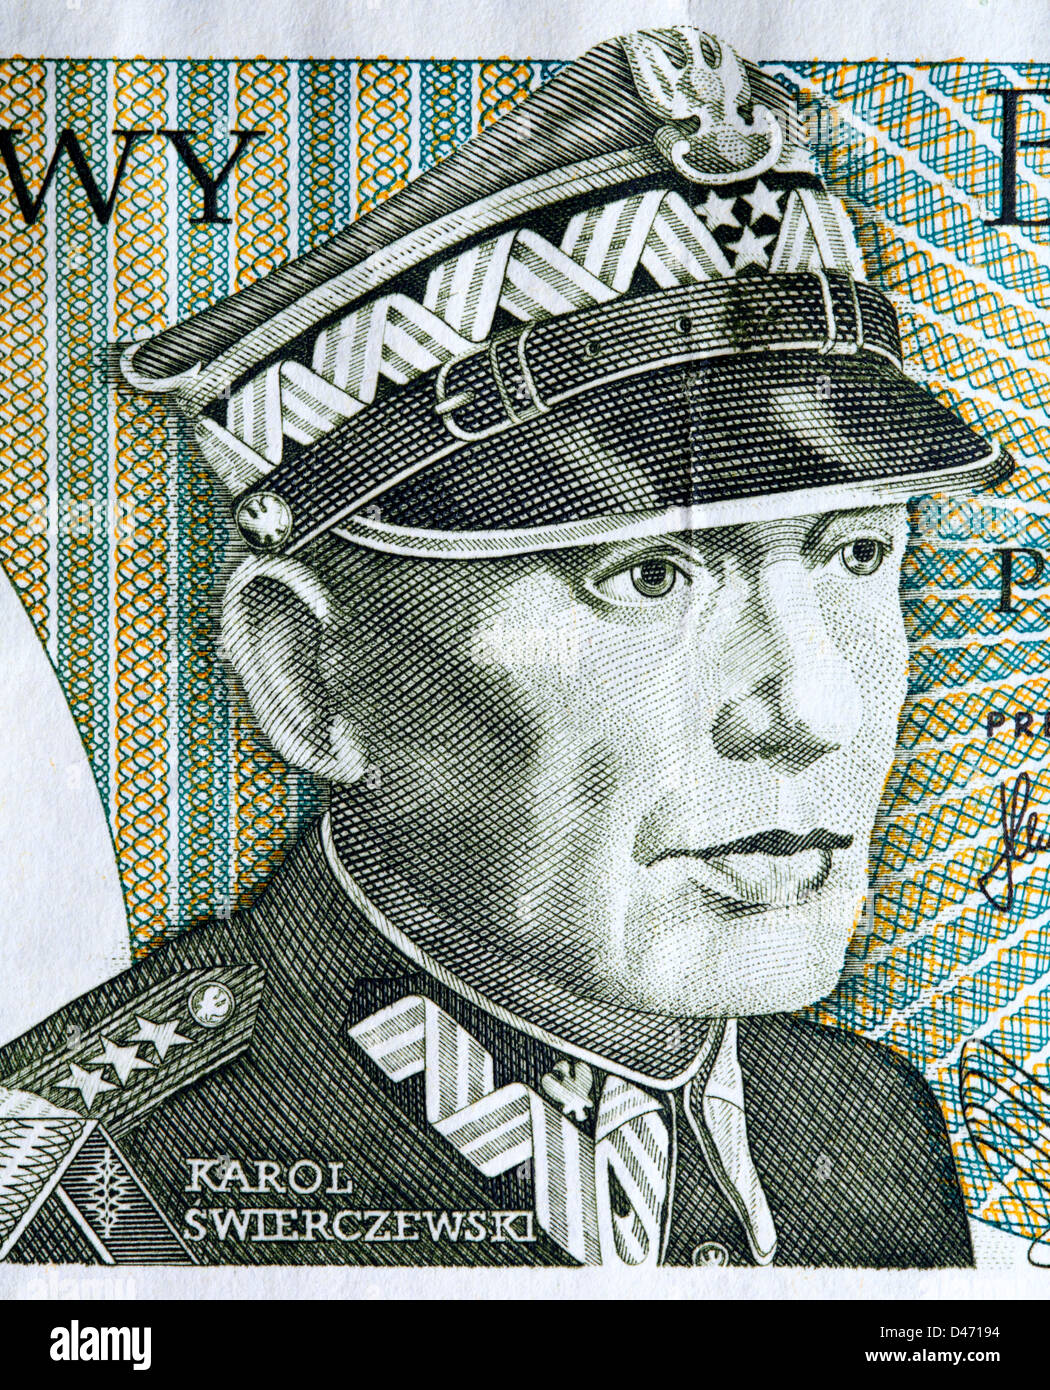 Portrait du général Karol Swierczewski à partir de 50 billets Zlotych, Pologne, 1982 Banque D'Images